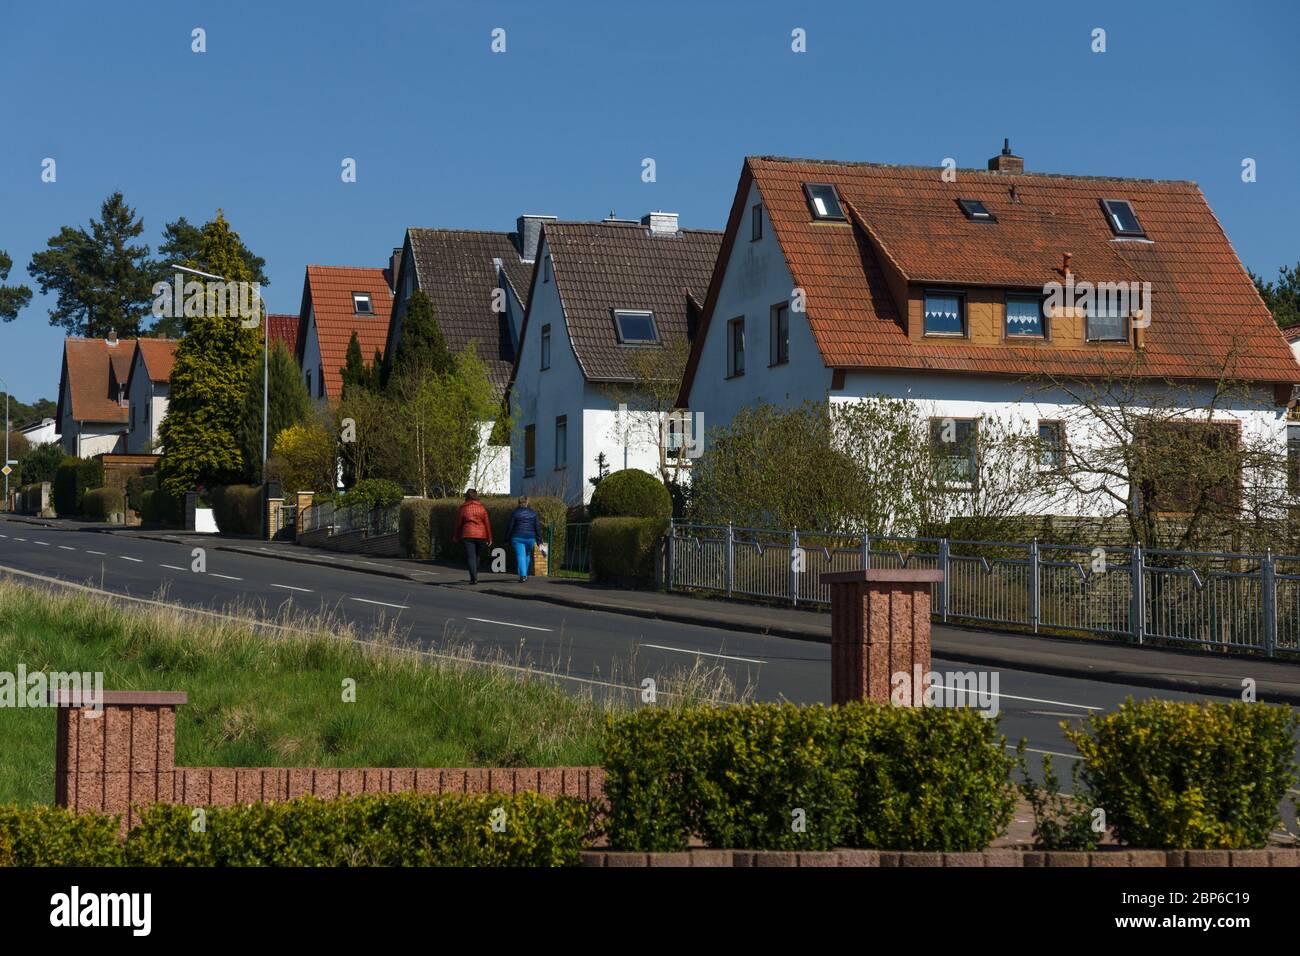 NEUSTADT (Hesse), en Allemagne - le 19 avril 2015 : Les bâtiments et la rue d'une ville de province. Banque D'Images